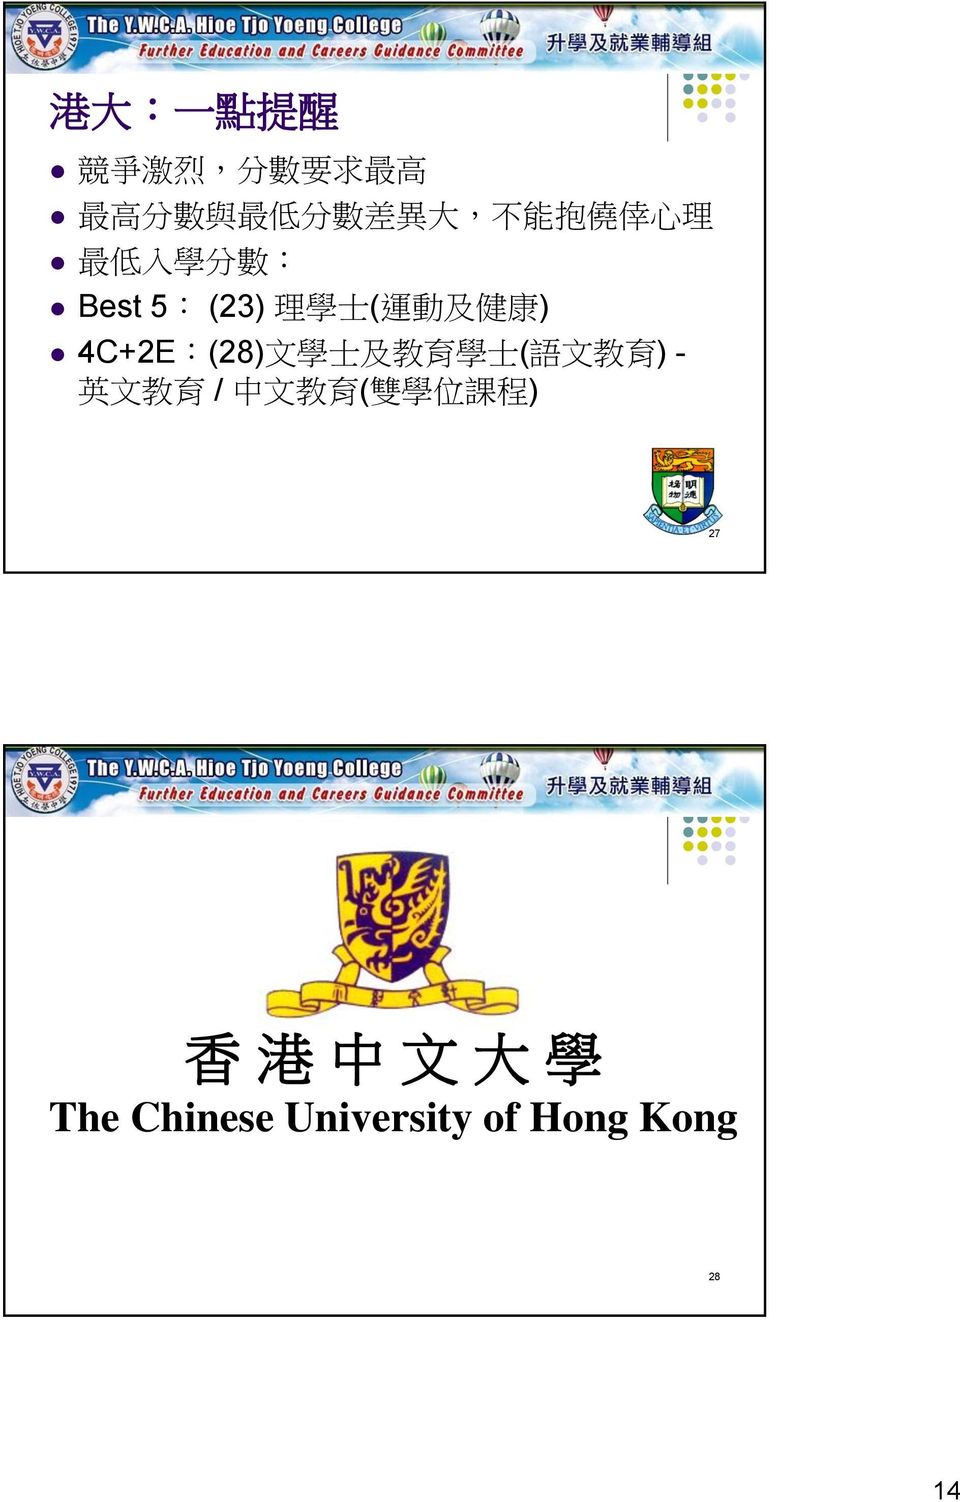 4C+2E:(28) 文 學 士 及 教 育 學 士 ( 語 文 教 育 ) - 英 文 教 育 / 中 文 教 育 ( 雙